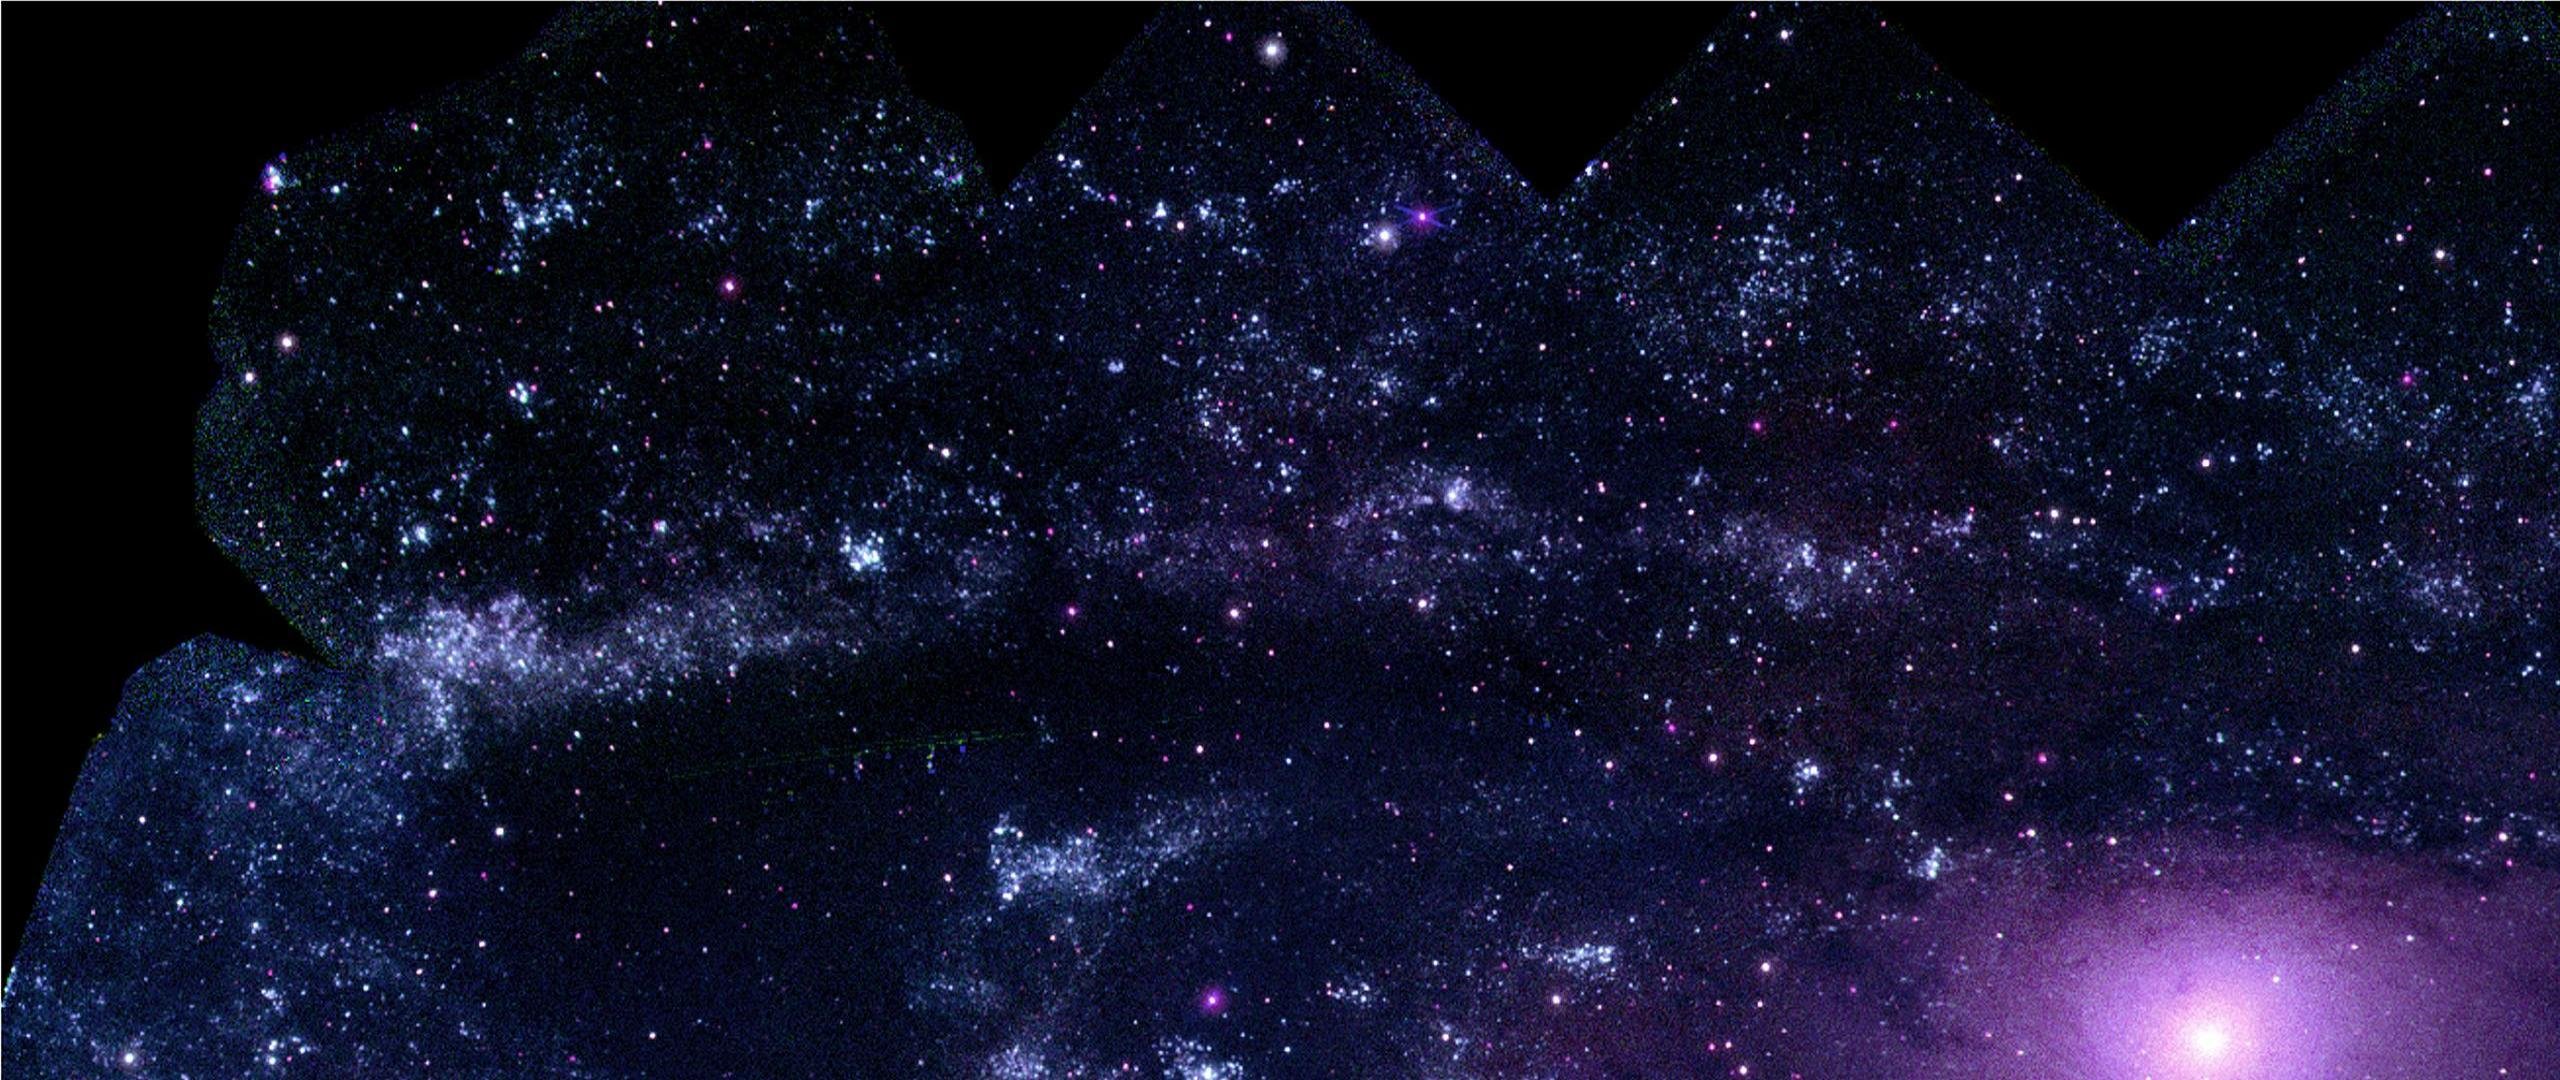 Best Galaxy Wallpaper Id - Andromeda Galaxy Gamma Ray - HD Wallpaper 